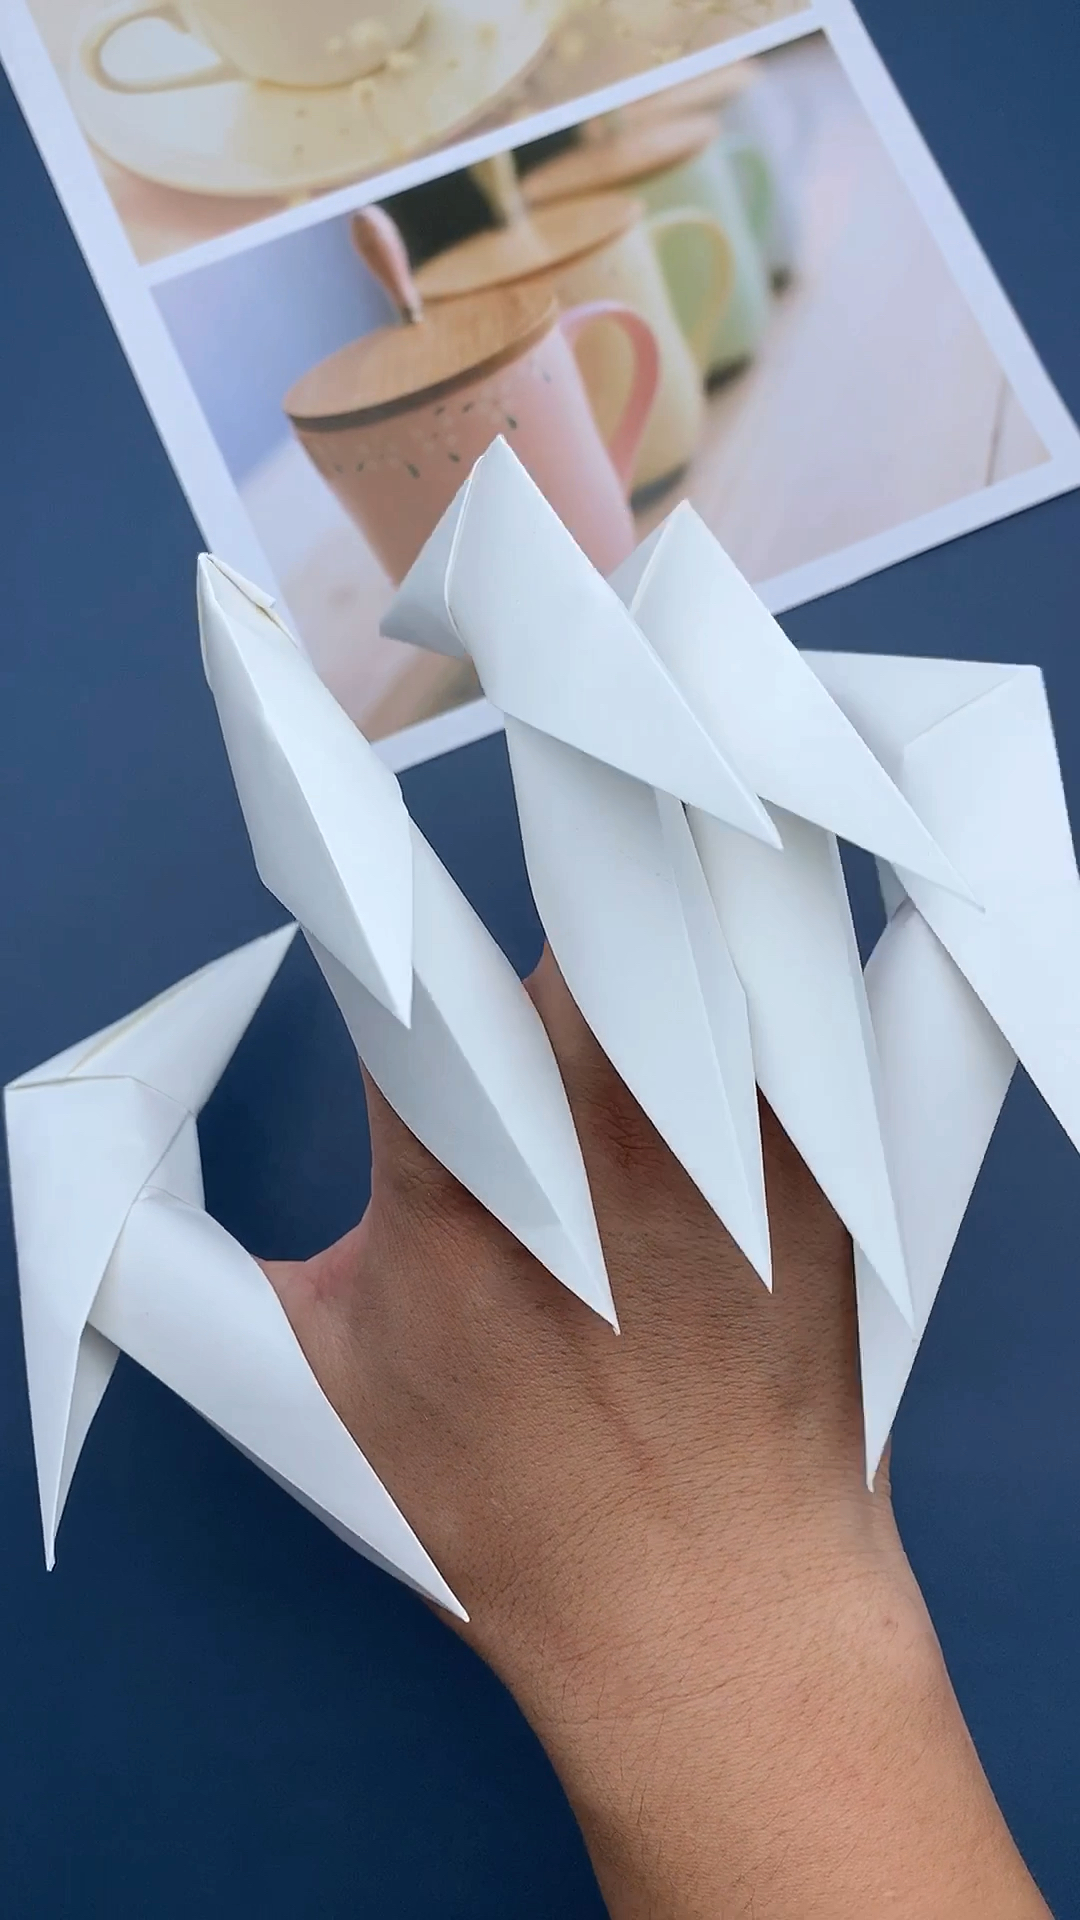 手工制作小时候最喜欢玩的龙爪手折纸你玩过吗